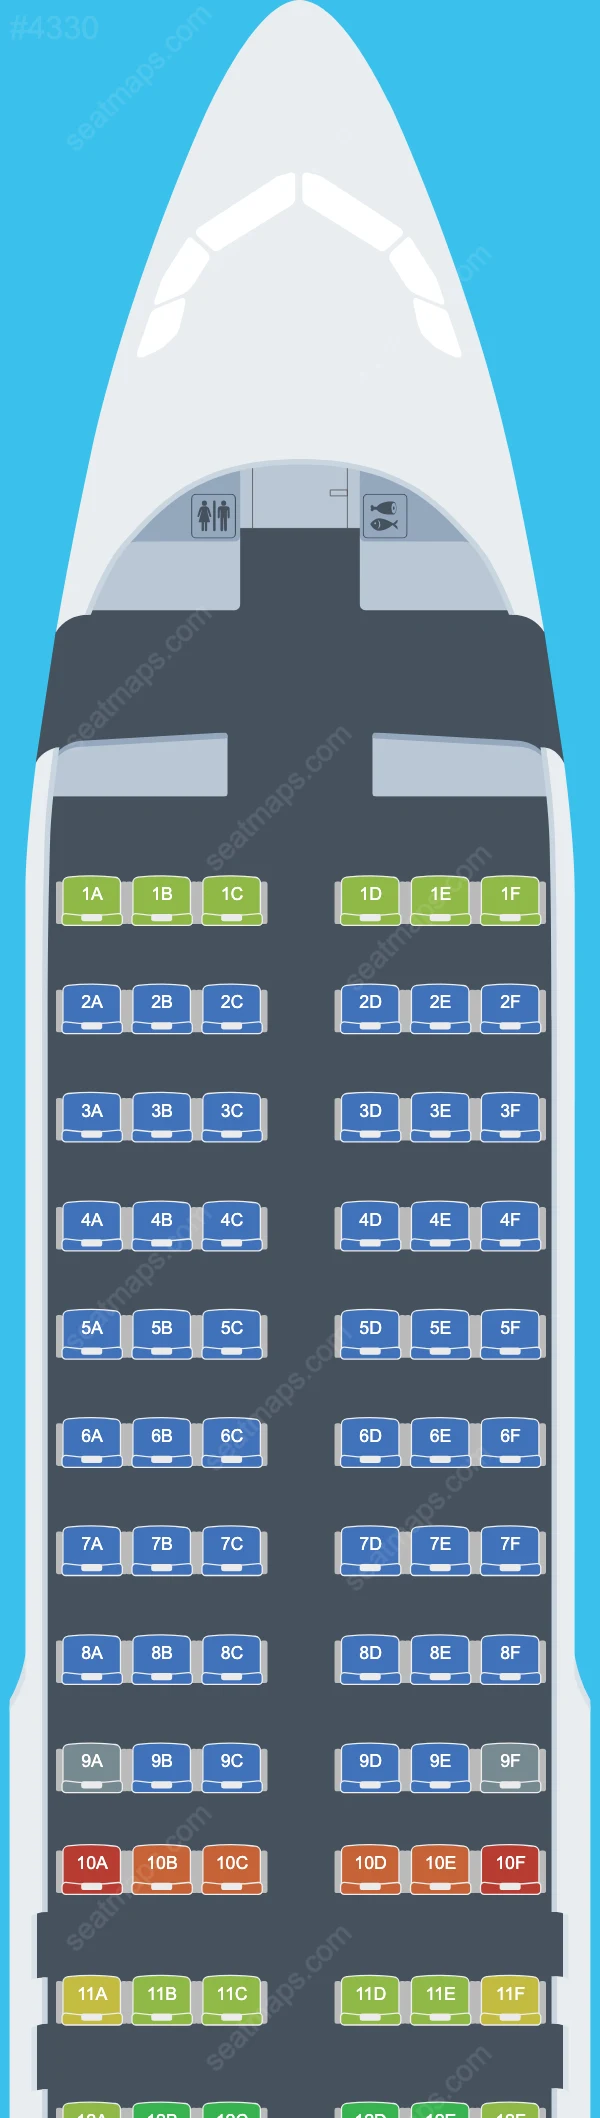 Air Busan Airbus A320 Seat Maps A320-200 V.2